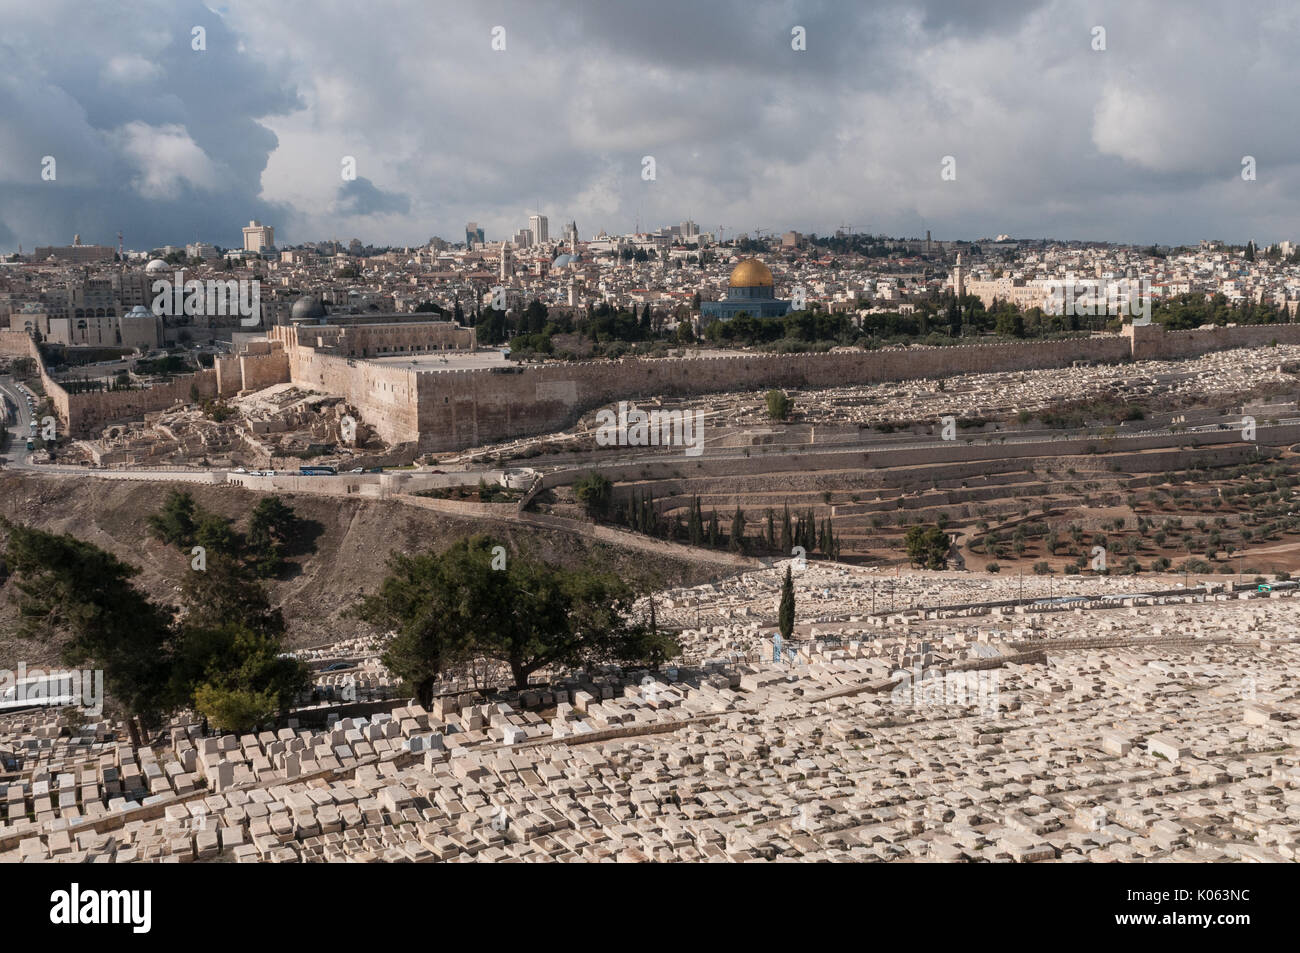 Cimetière juif sur le Mont des Oliviers à Jérusalem, Israël. Ce site contient environ 150 000 tombes et a été utilisé pendant plus de 3 000 ans. Banque D'Images